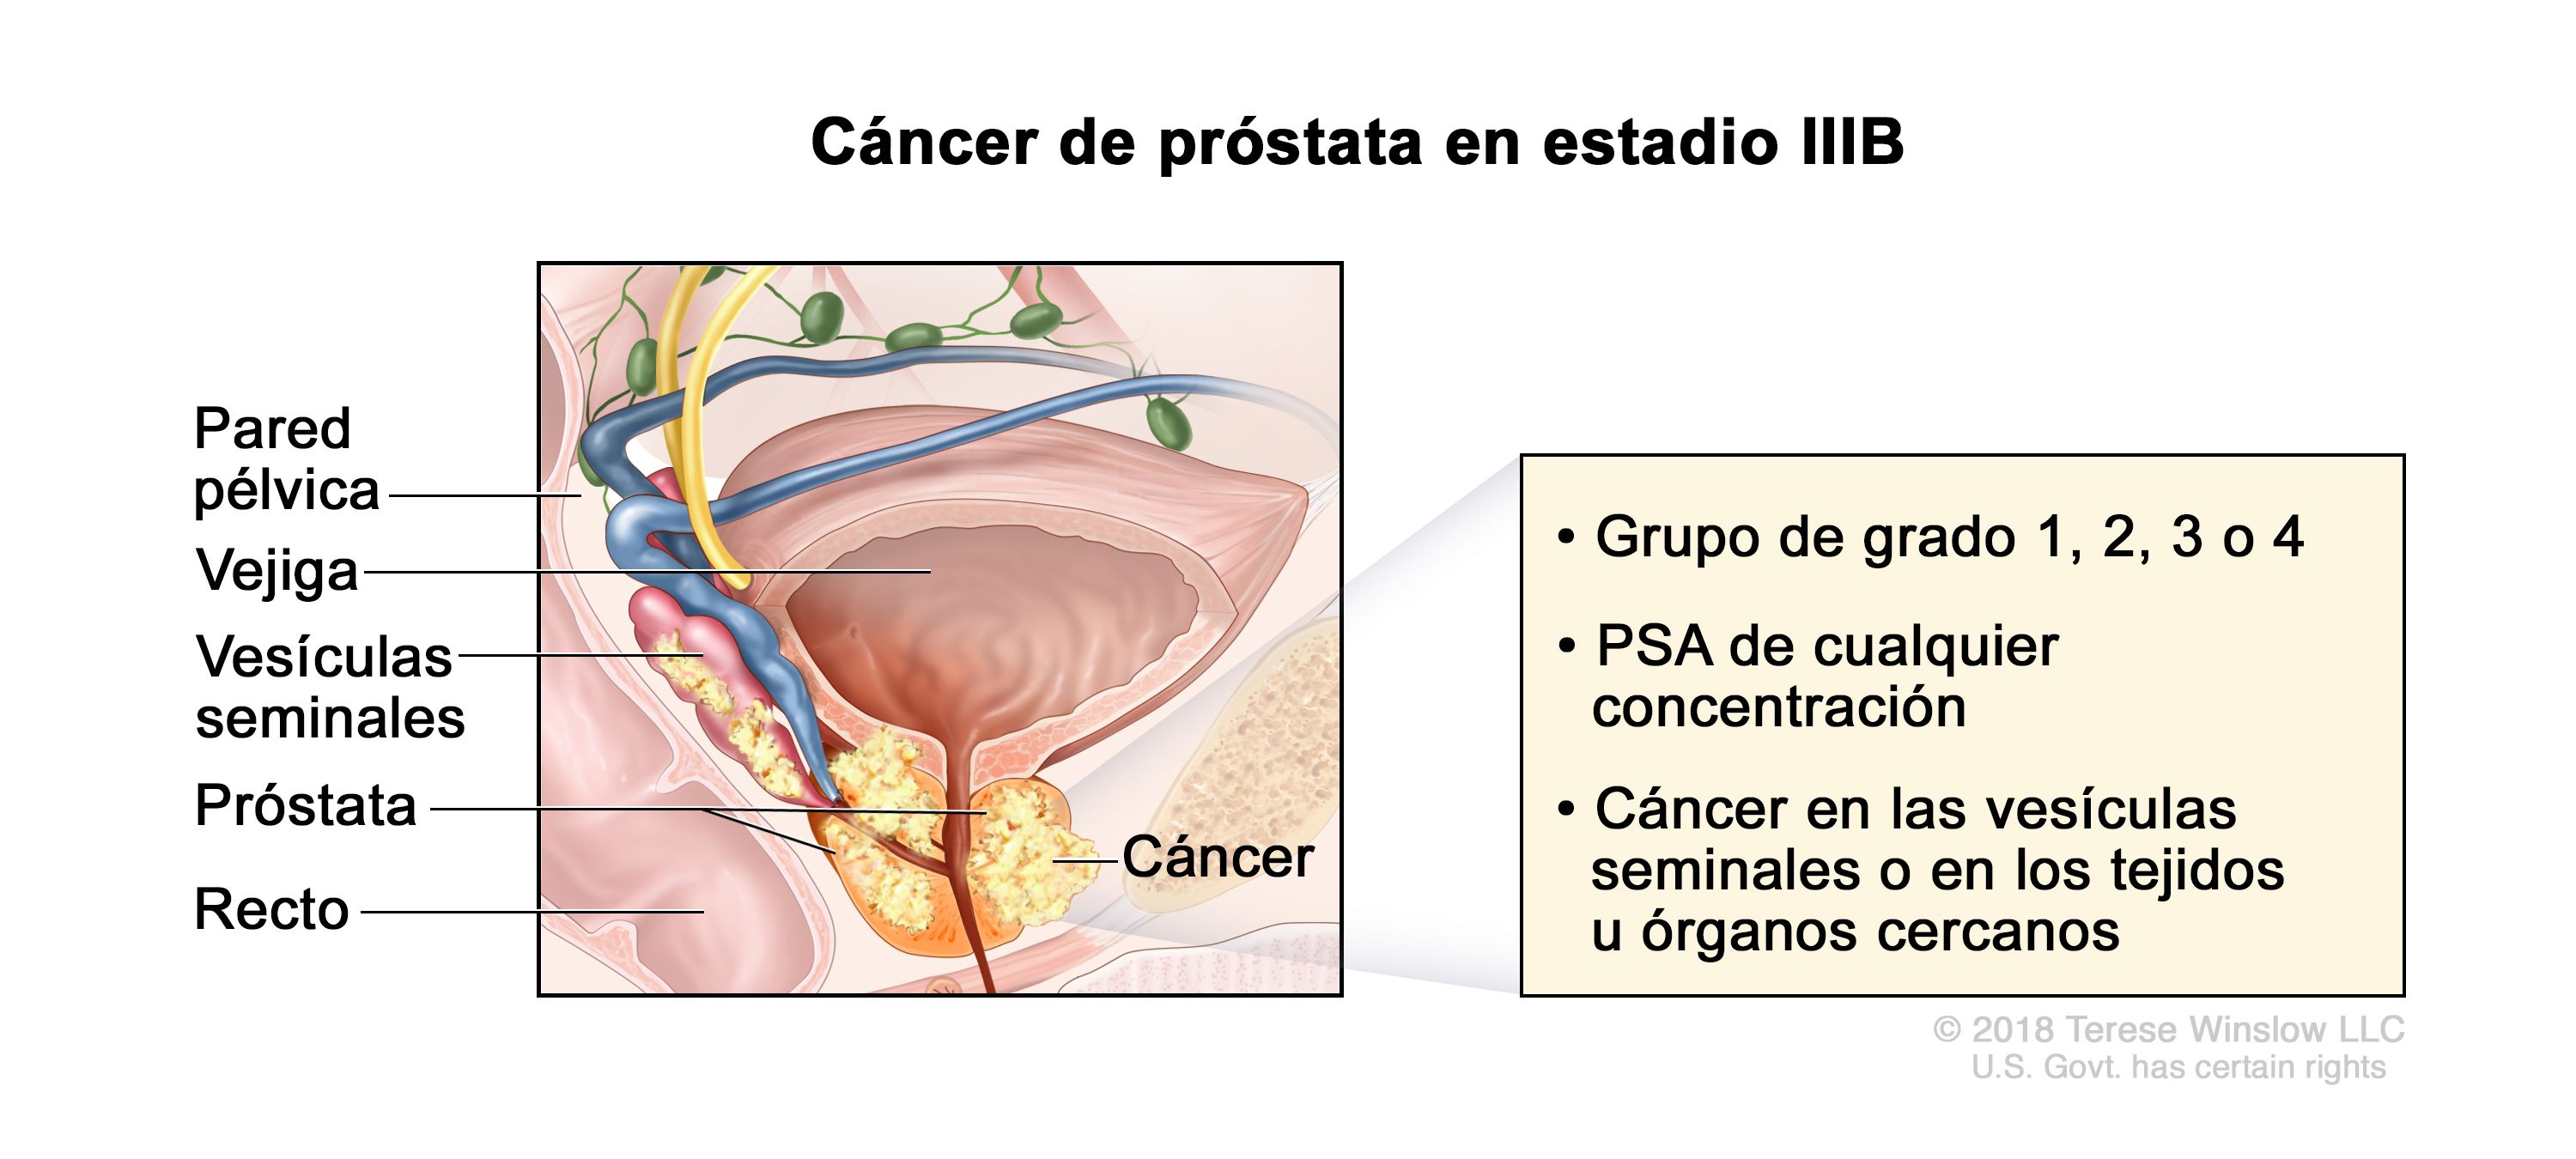 Cancer de colon etapas y sintomas Hepatic cancer and itching Que es cancer fase 3